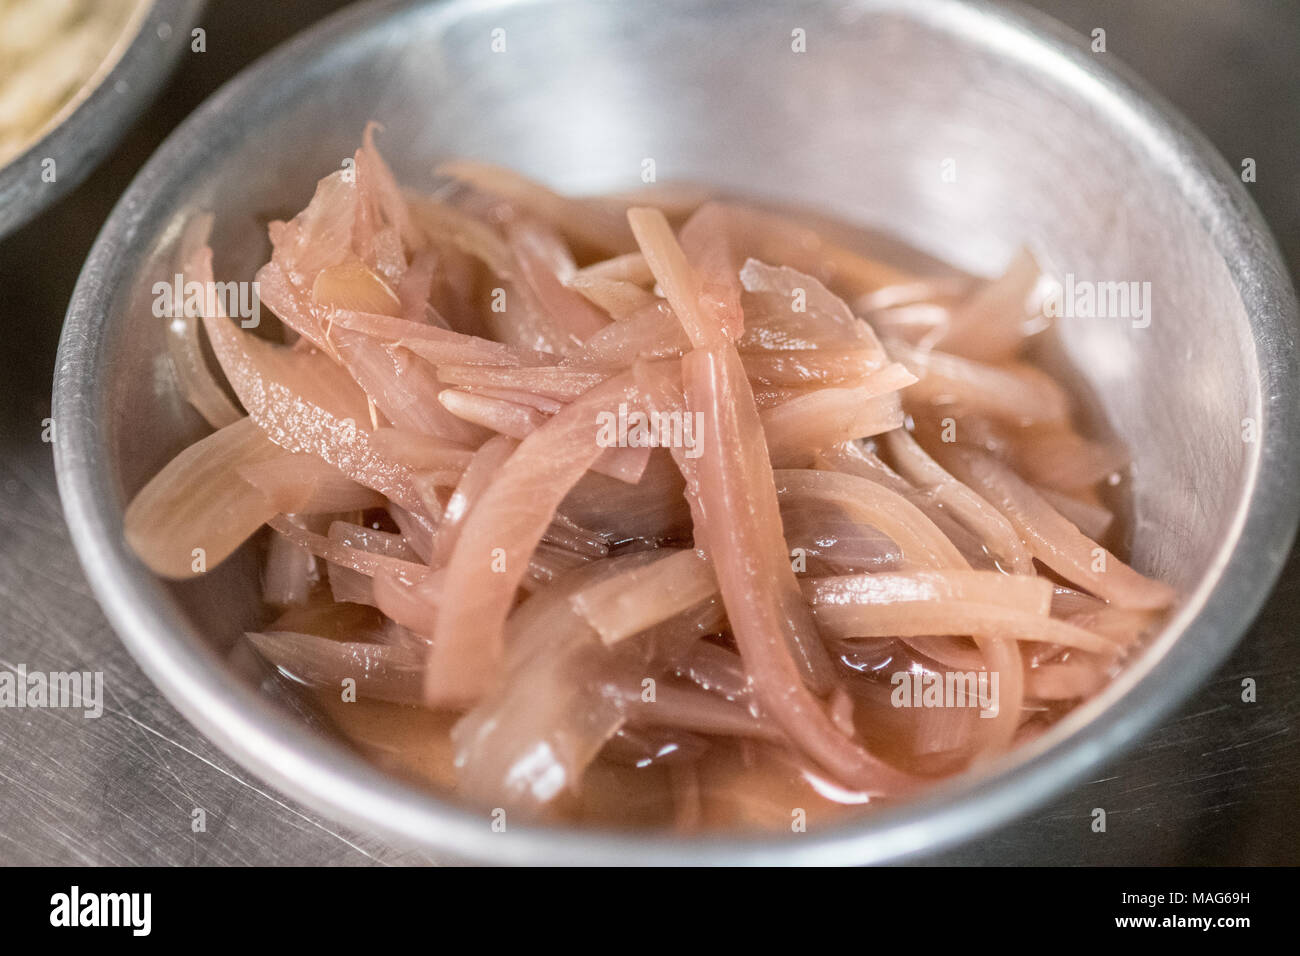 Des oignons tranchés prêts dans un bol pour la préparation des repas Banque D'Images